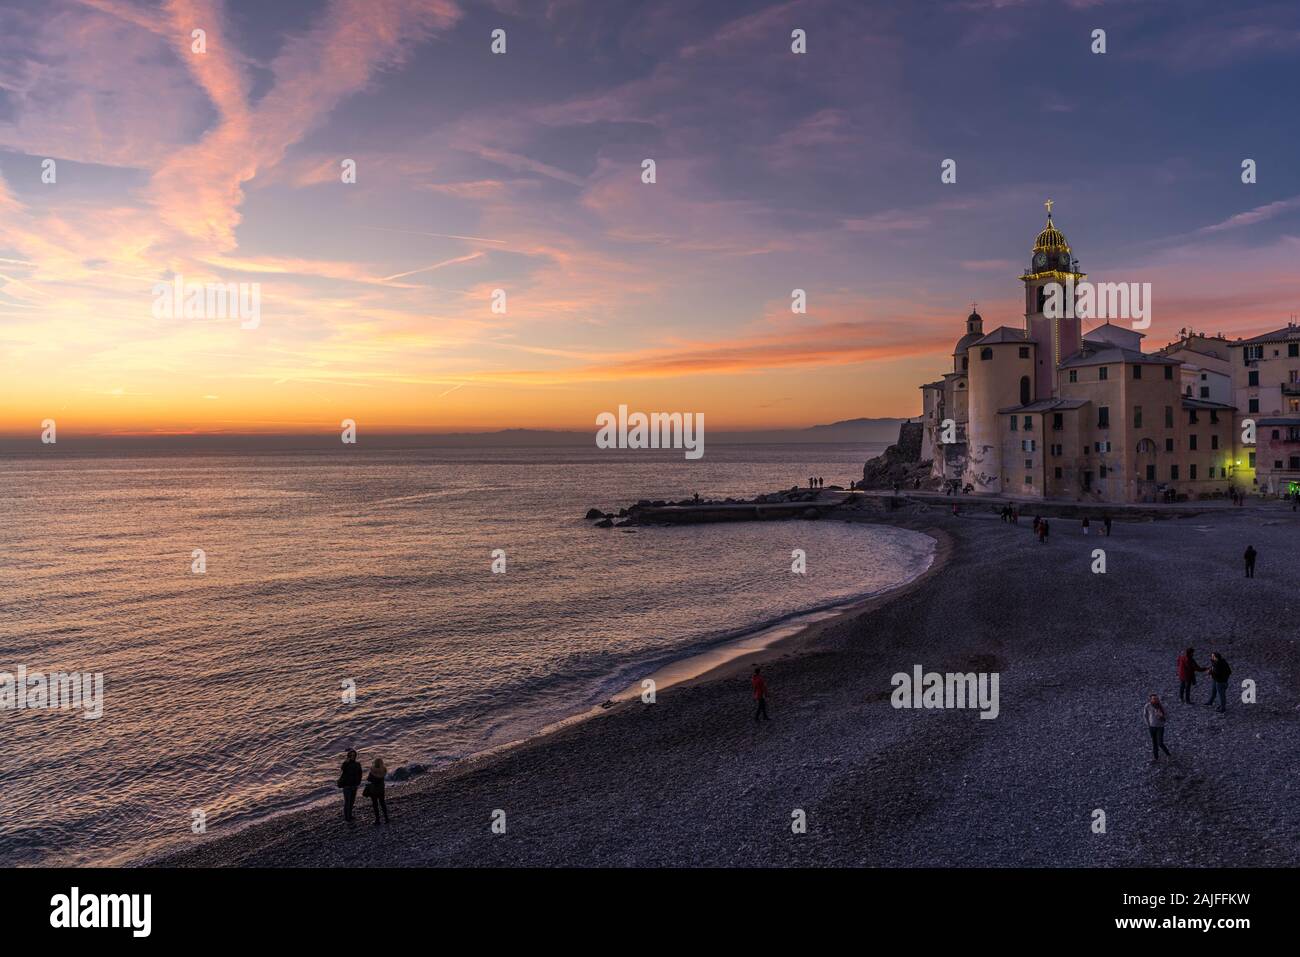 Camogli, Genova, Italy: Beautiful romantic sunset view of quaint Italian coastal village nearby Genoa Stock Photo